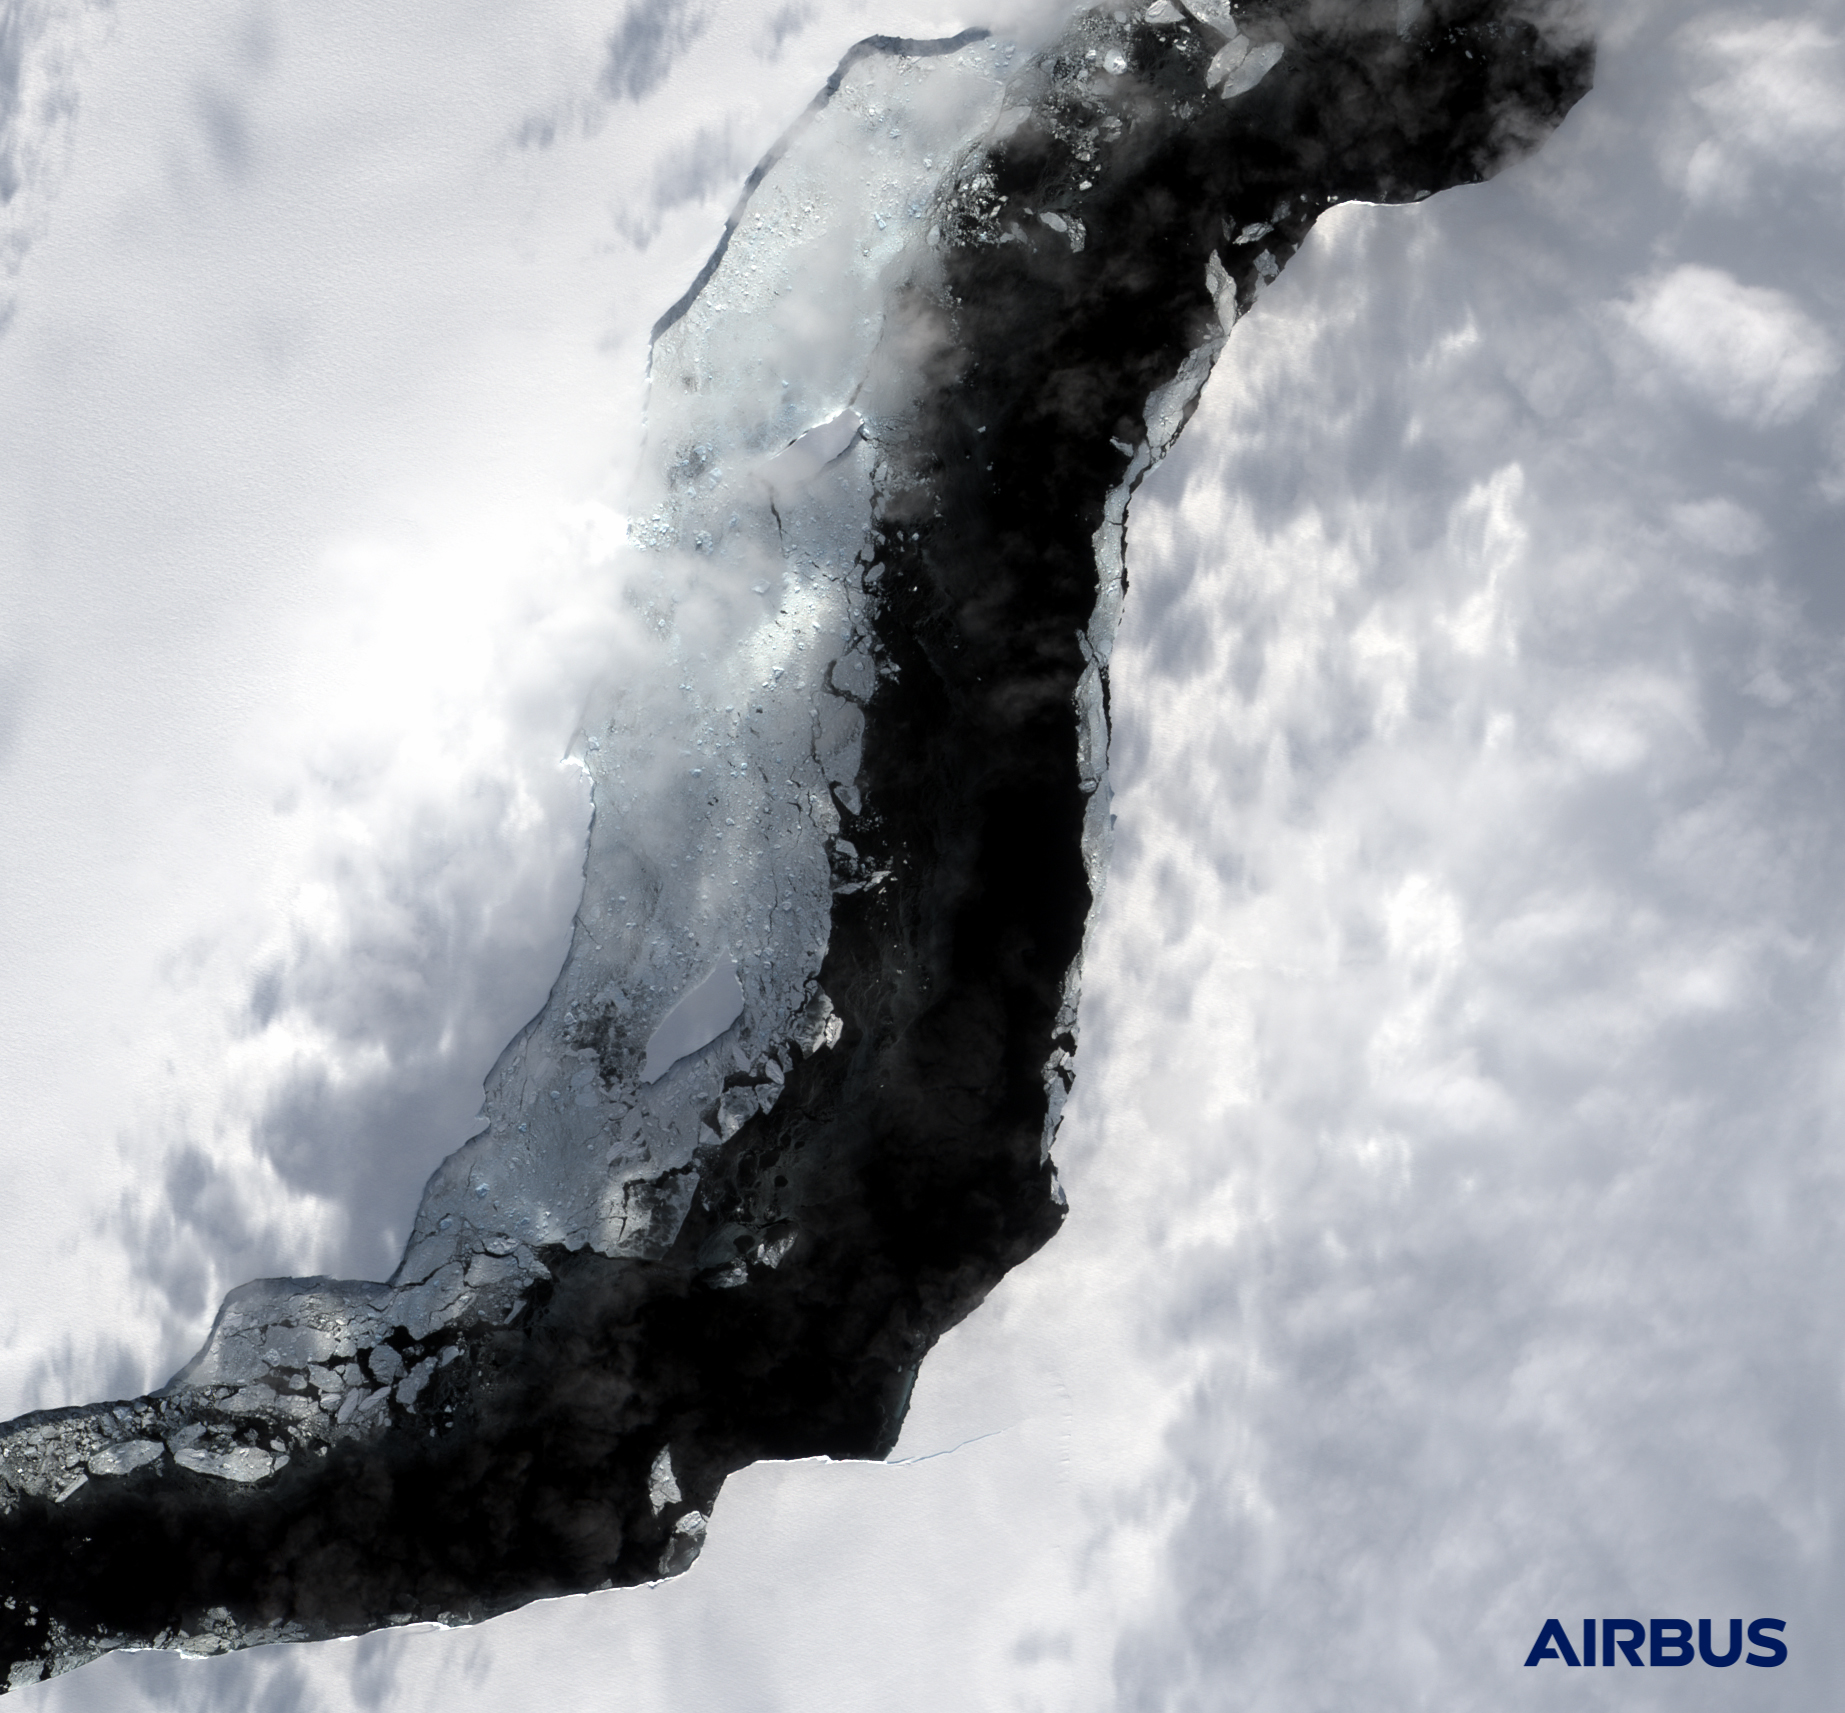 Снимки отколовшегося айсберга в Антарктиде. Скриншот  twitter.com/AirbusSpace